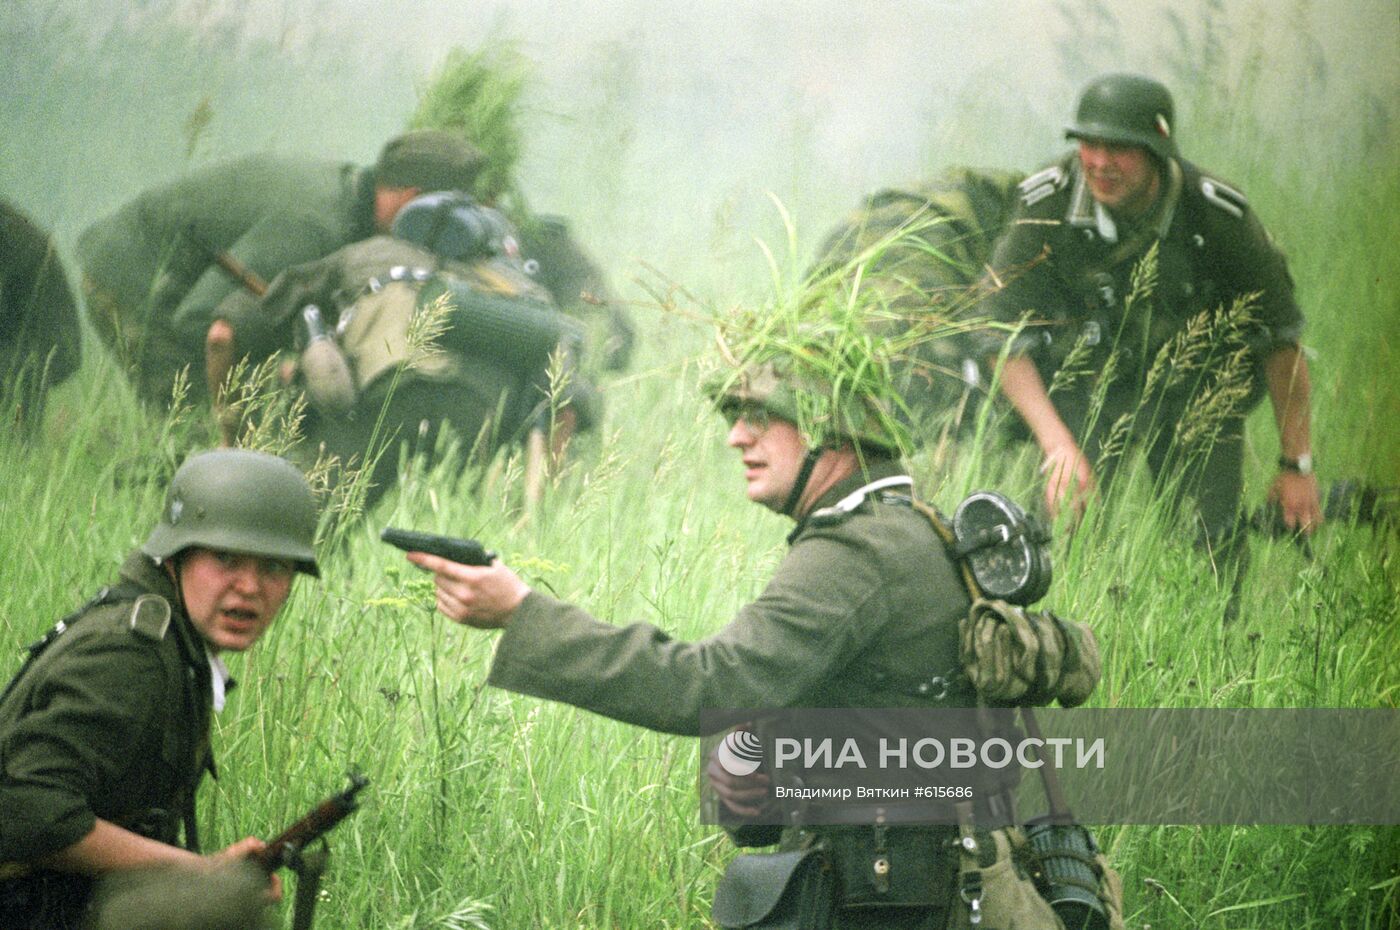 Сцена из исторической реконструкции Курской битвы